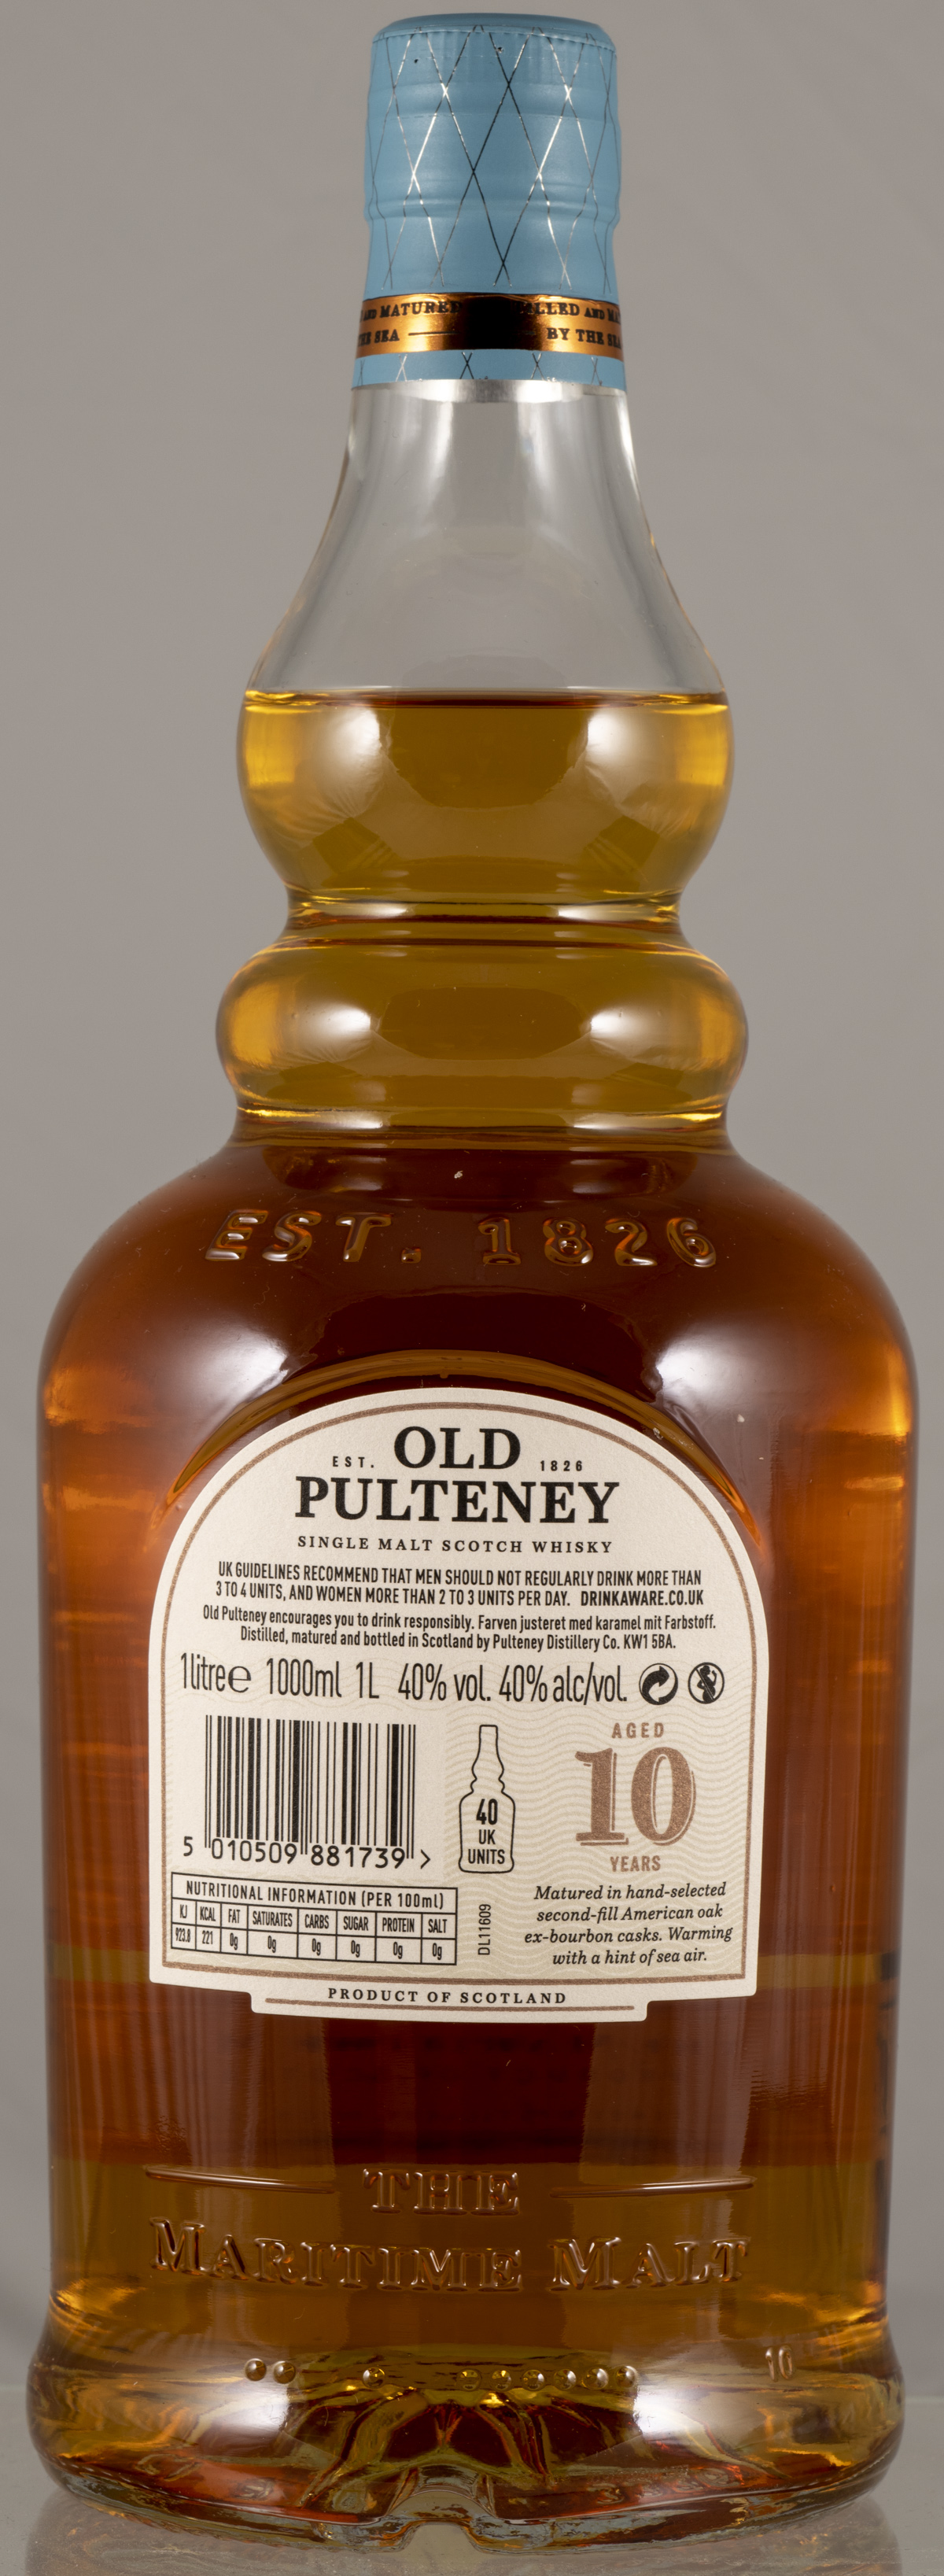 Billede: PHC_6990 - Pulteney 10 Travellers - bottle back.jpg